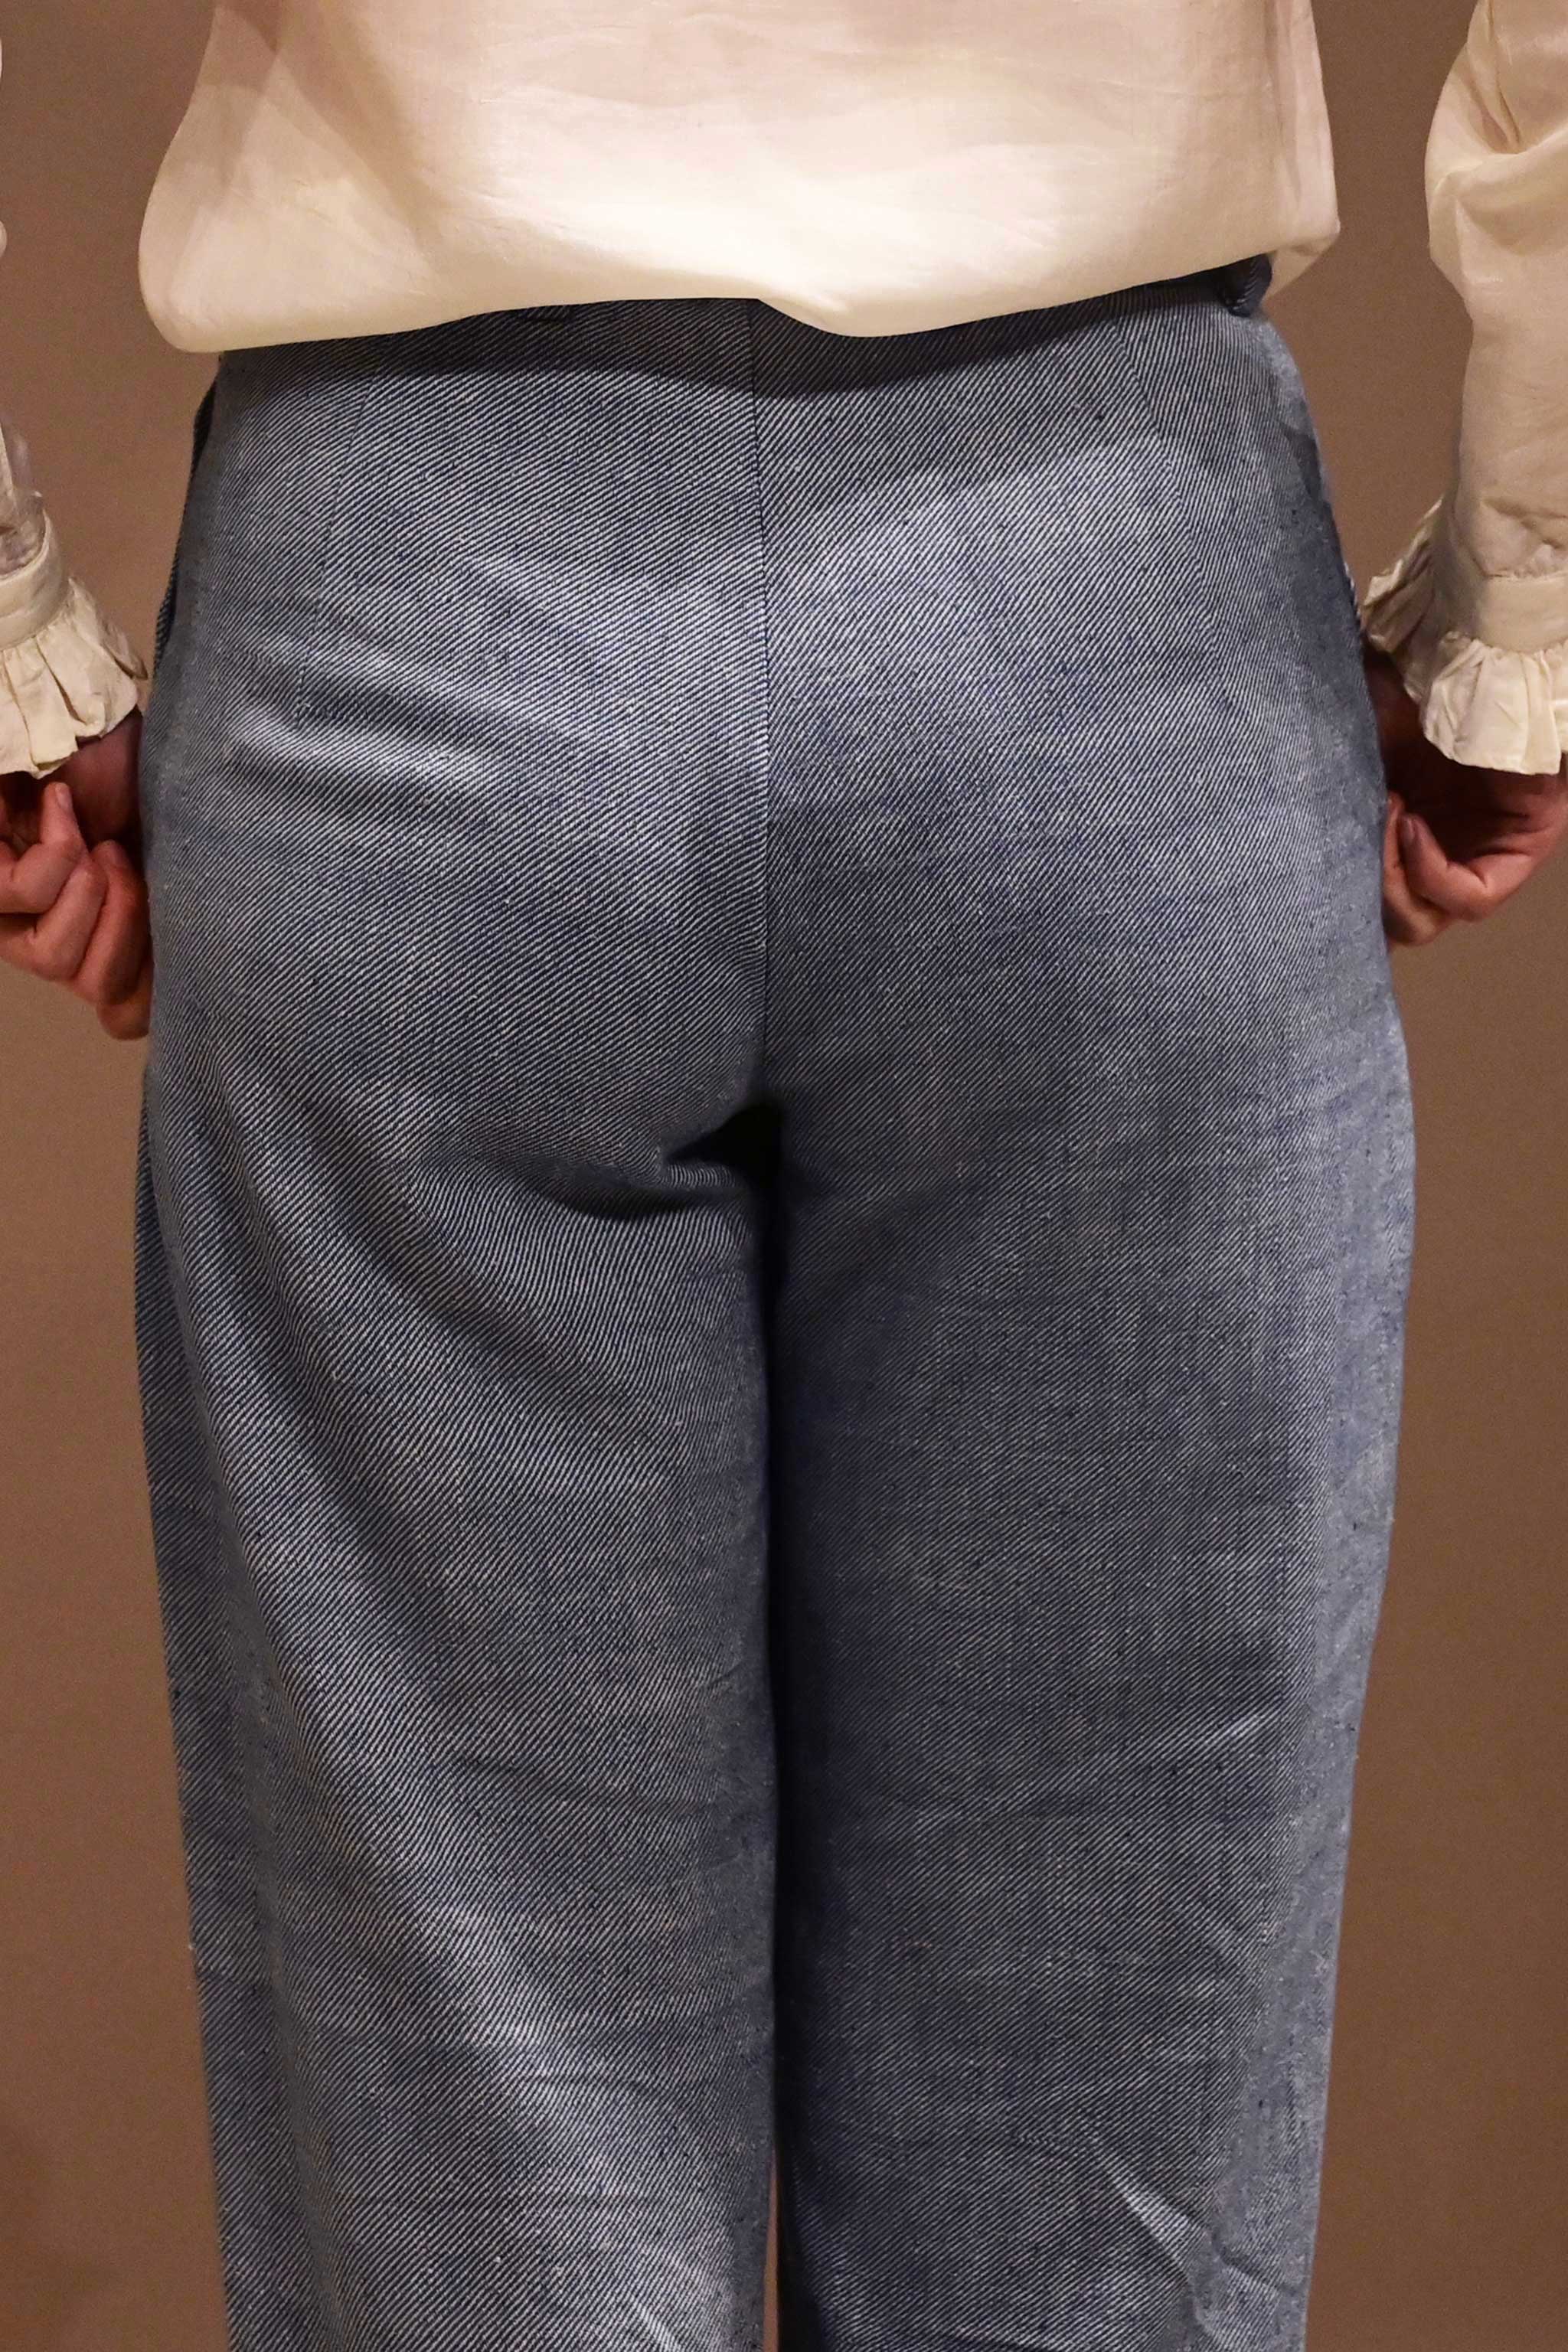 Buy Custom Made White Cotton Pants for Men Gurkha Trouser High Online in  India  Etsy